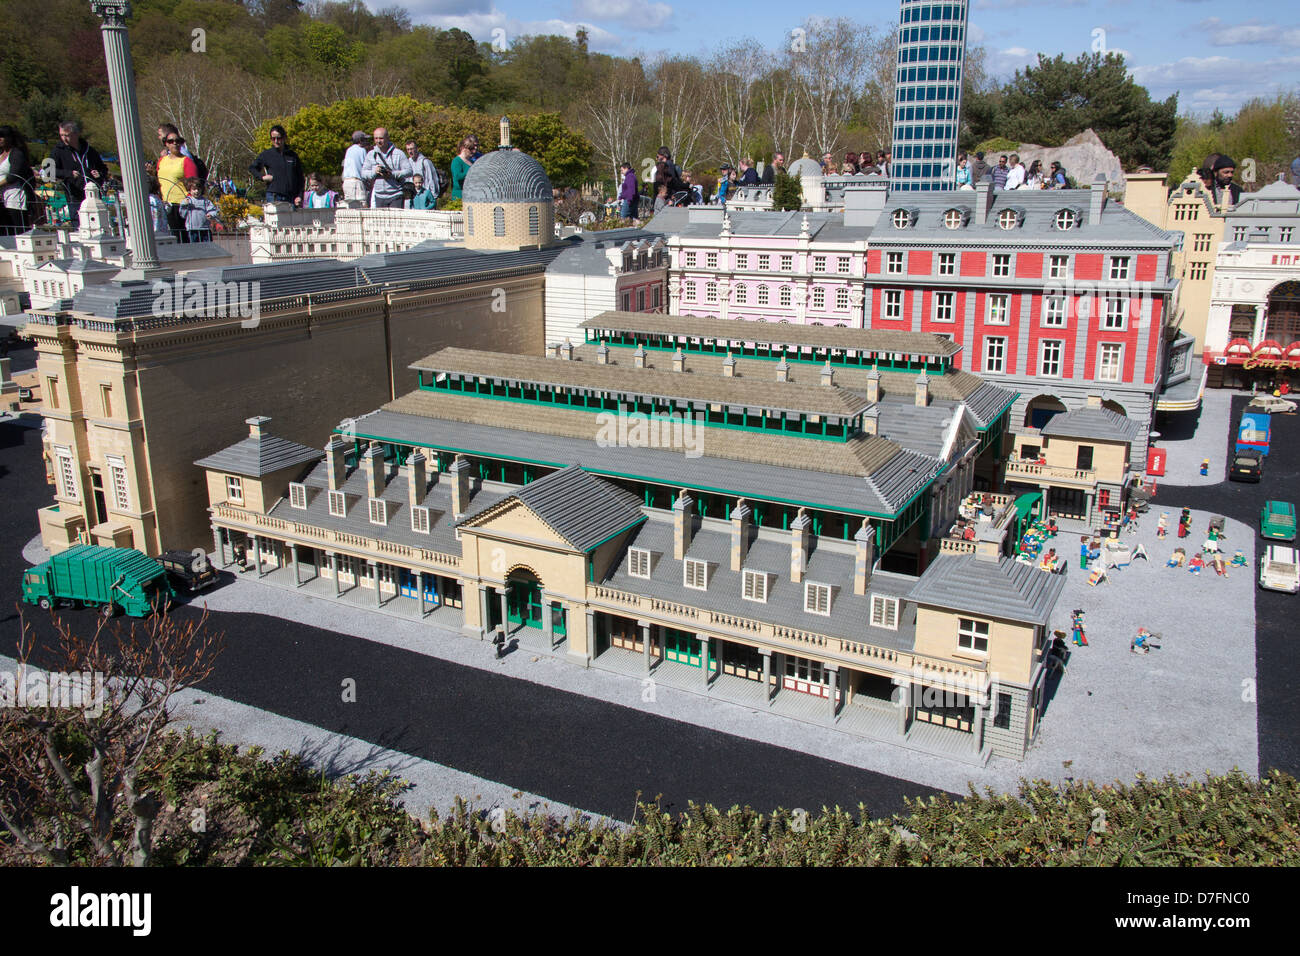 Miniland, Legoland Windsor, Berkshire, England, United Kingdom Stock Photo